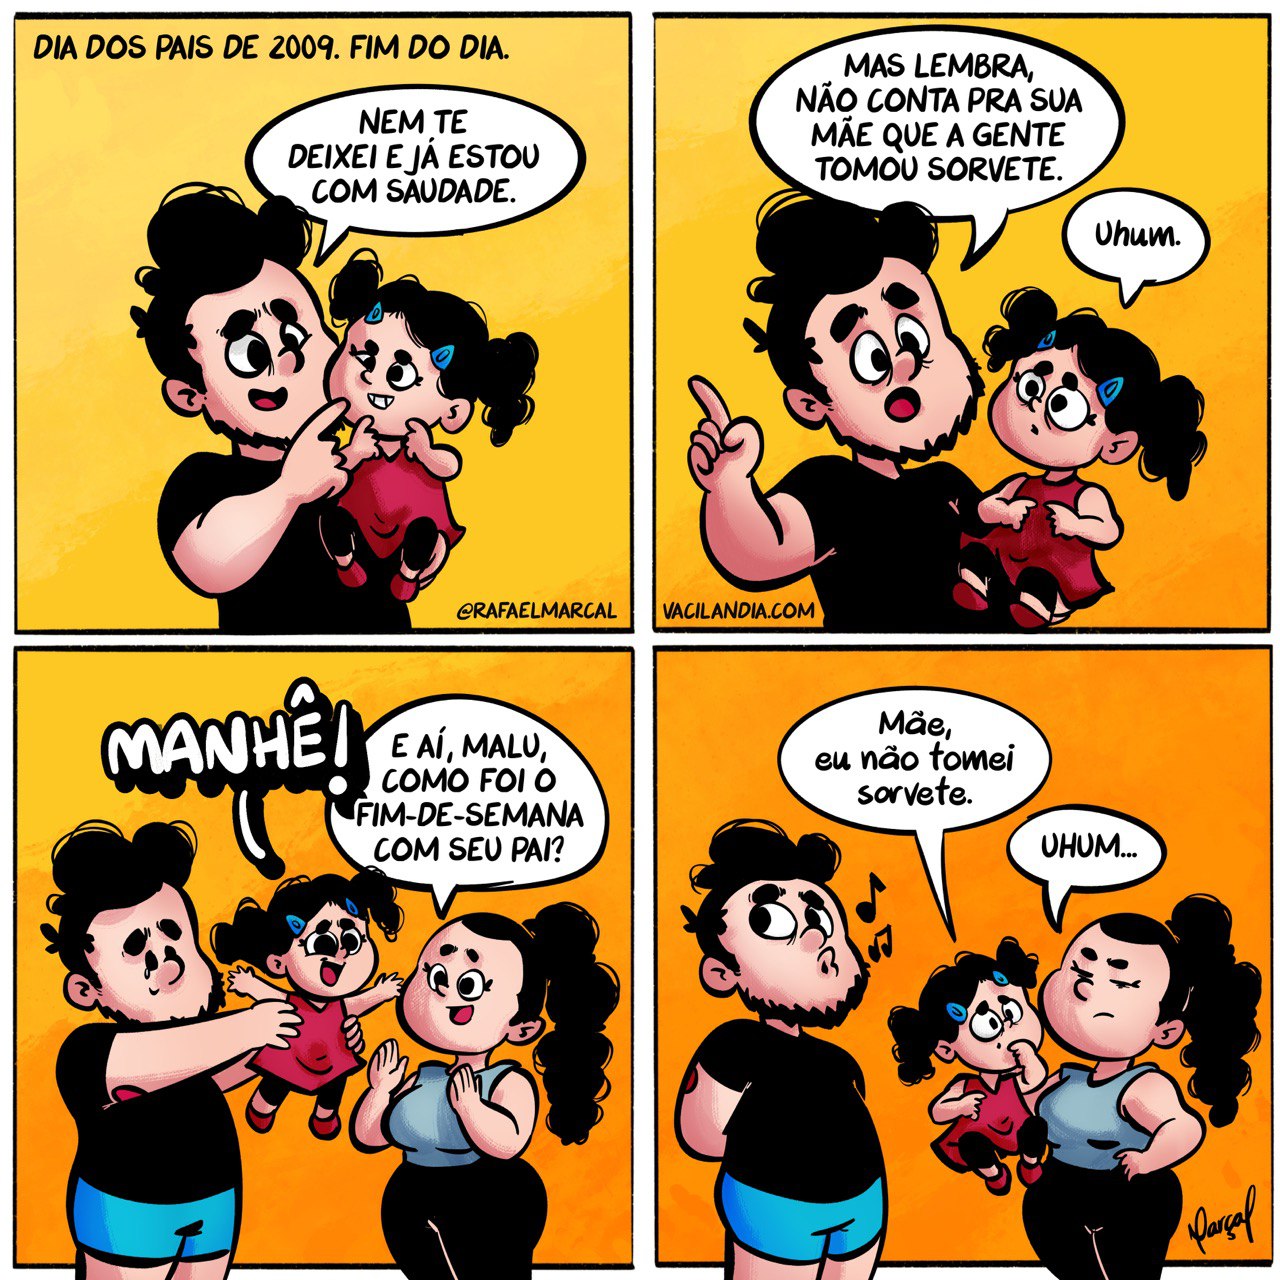 Bocó e o dia dos pais de 2009 | webcomic, tirinhas, sorvete, mentira, humor, dia dos pais, bocó